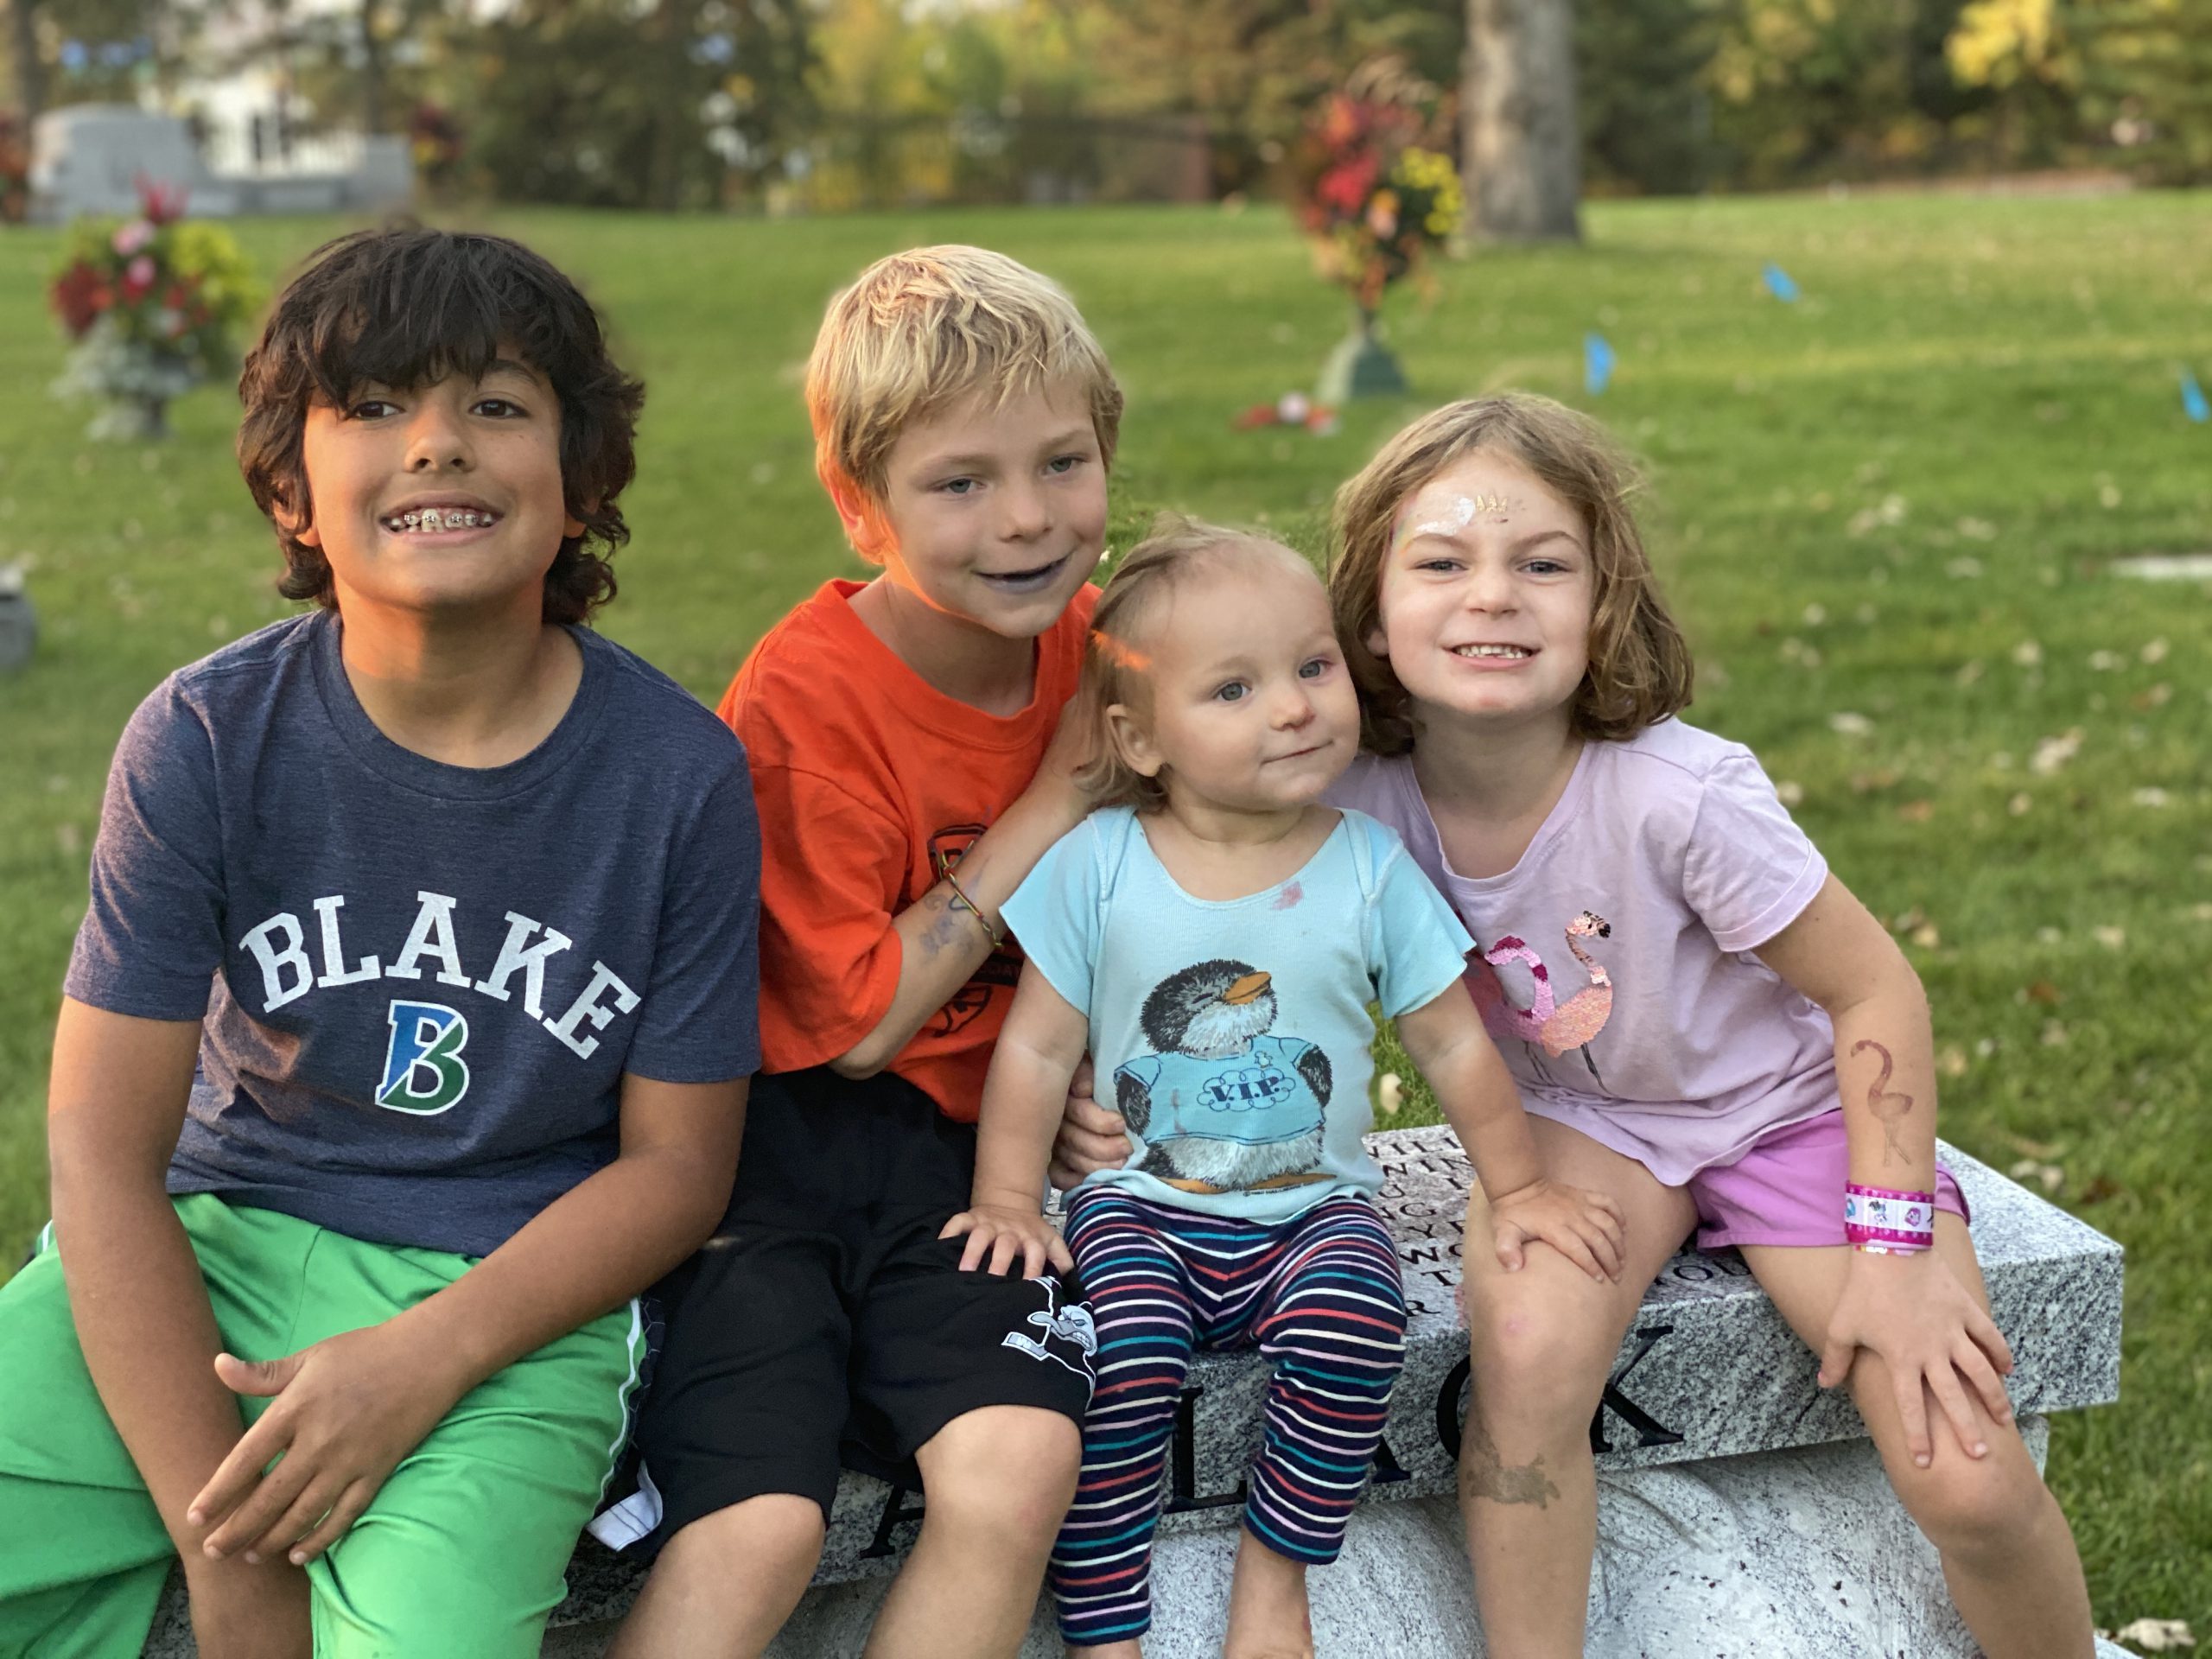 The Wyrobek kids sit smiling at a park